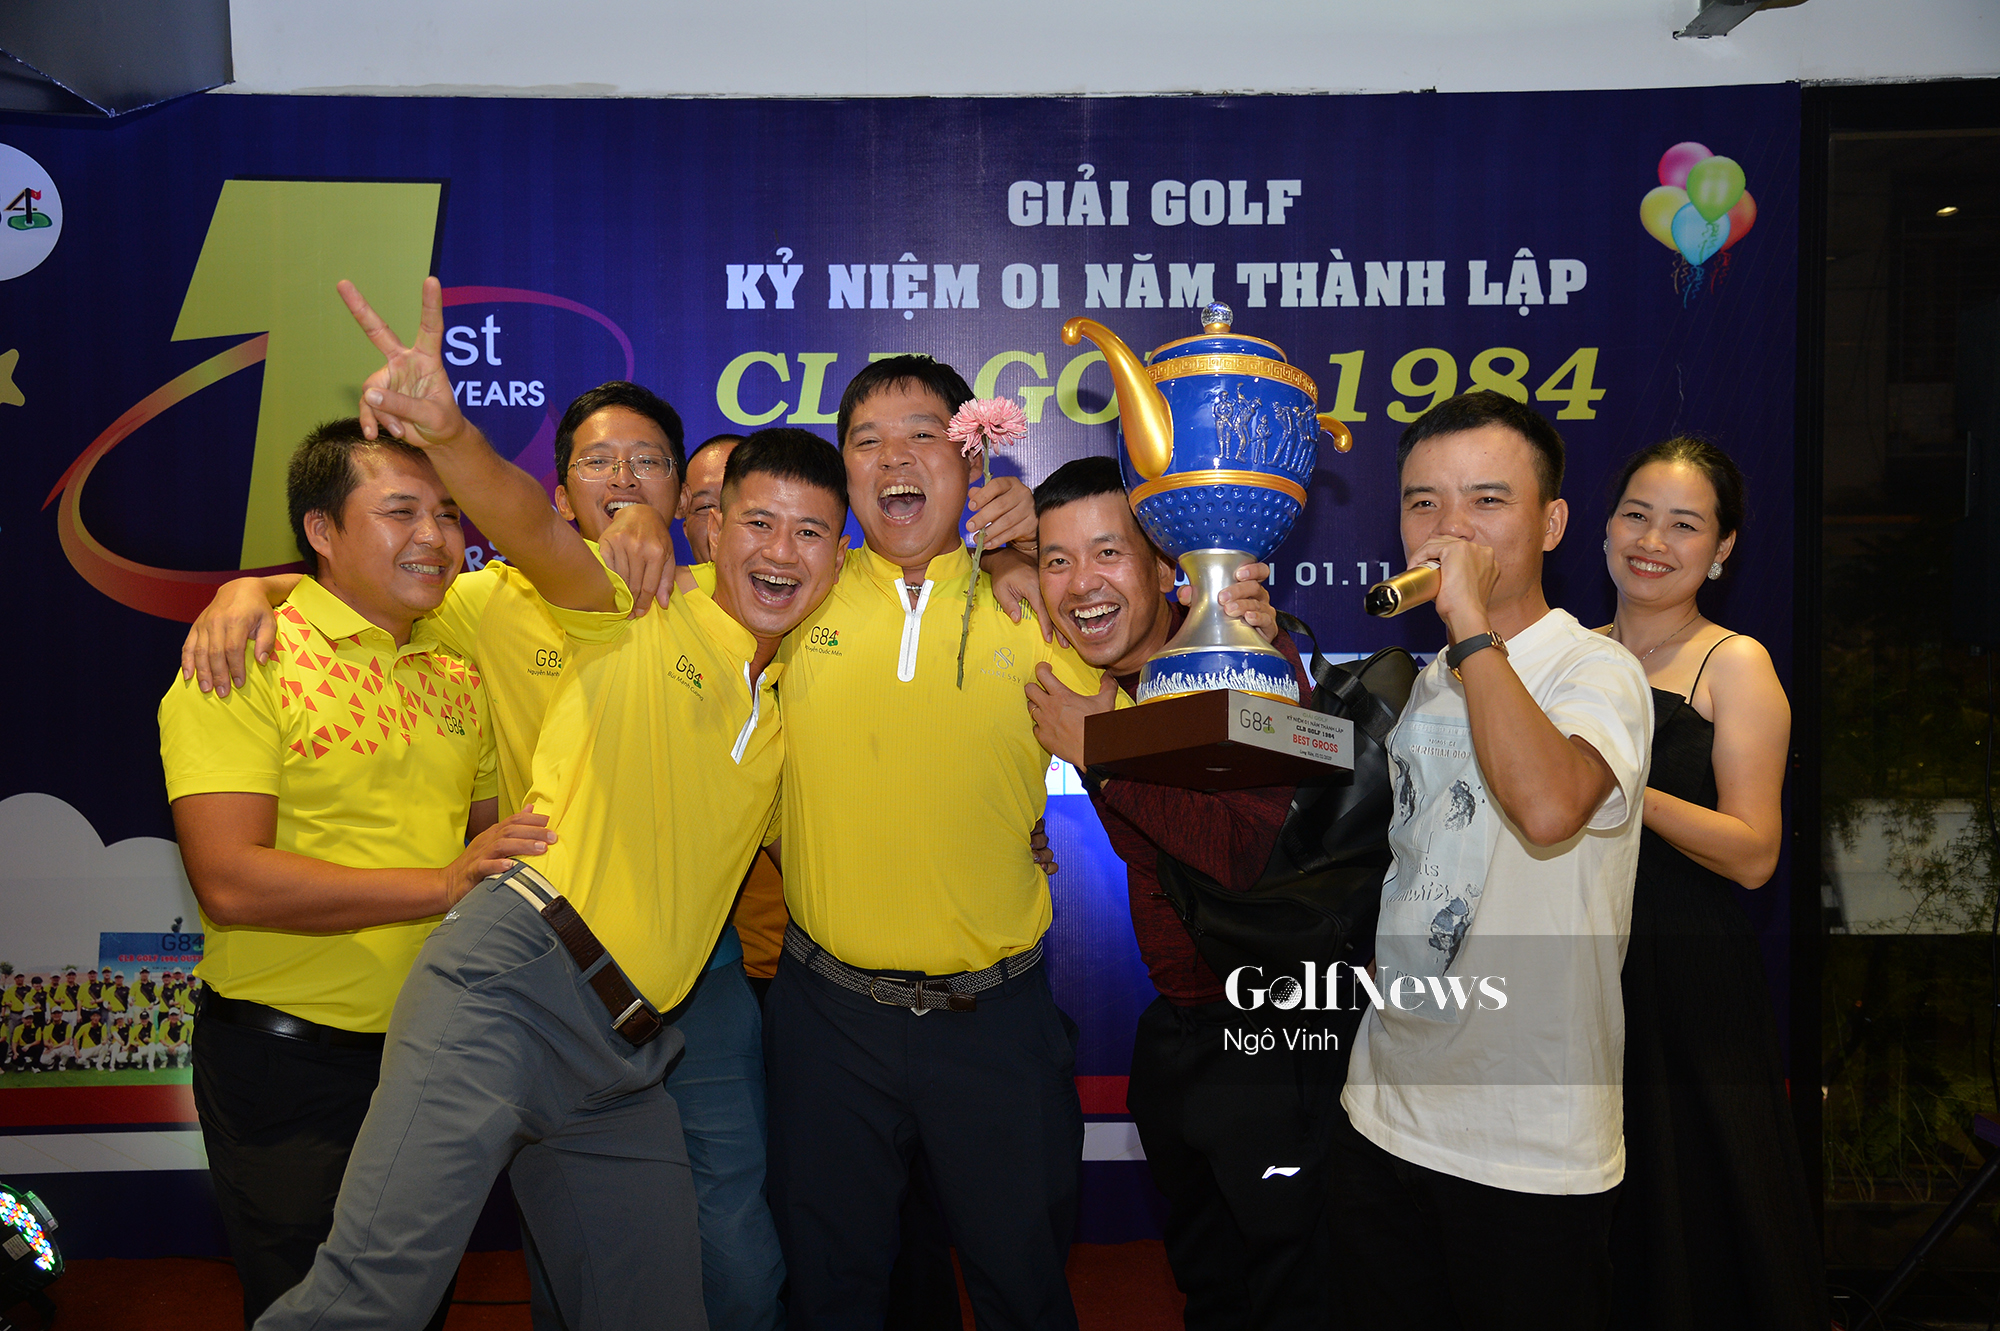 Golfer Nguyễn Quốc Mến vô địch giải golf Mừng sinh nhật 1 năm CLB Golf 1984